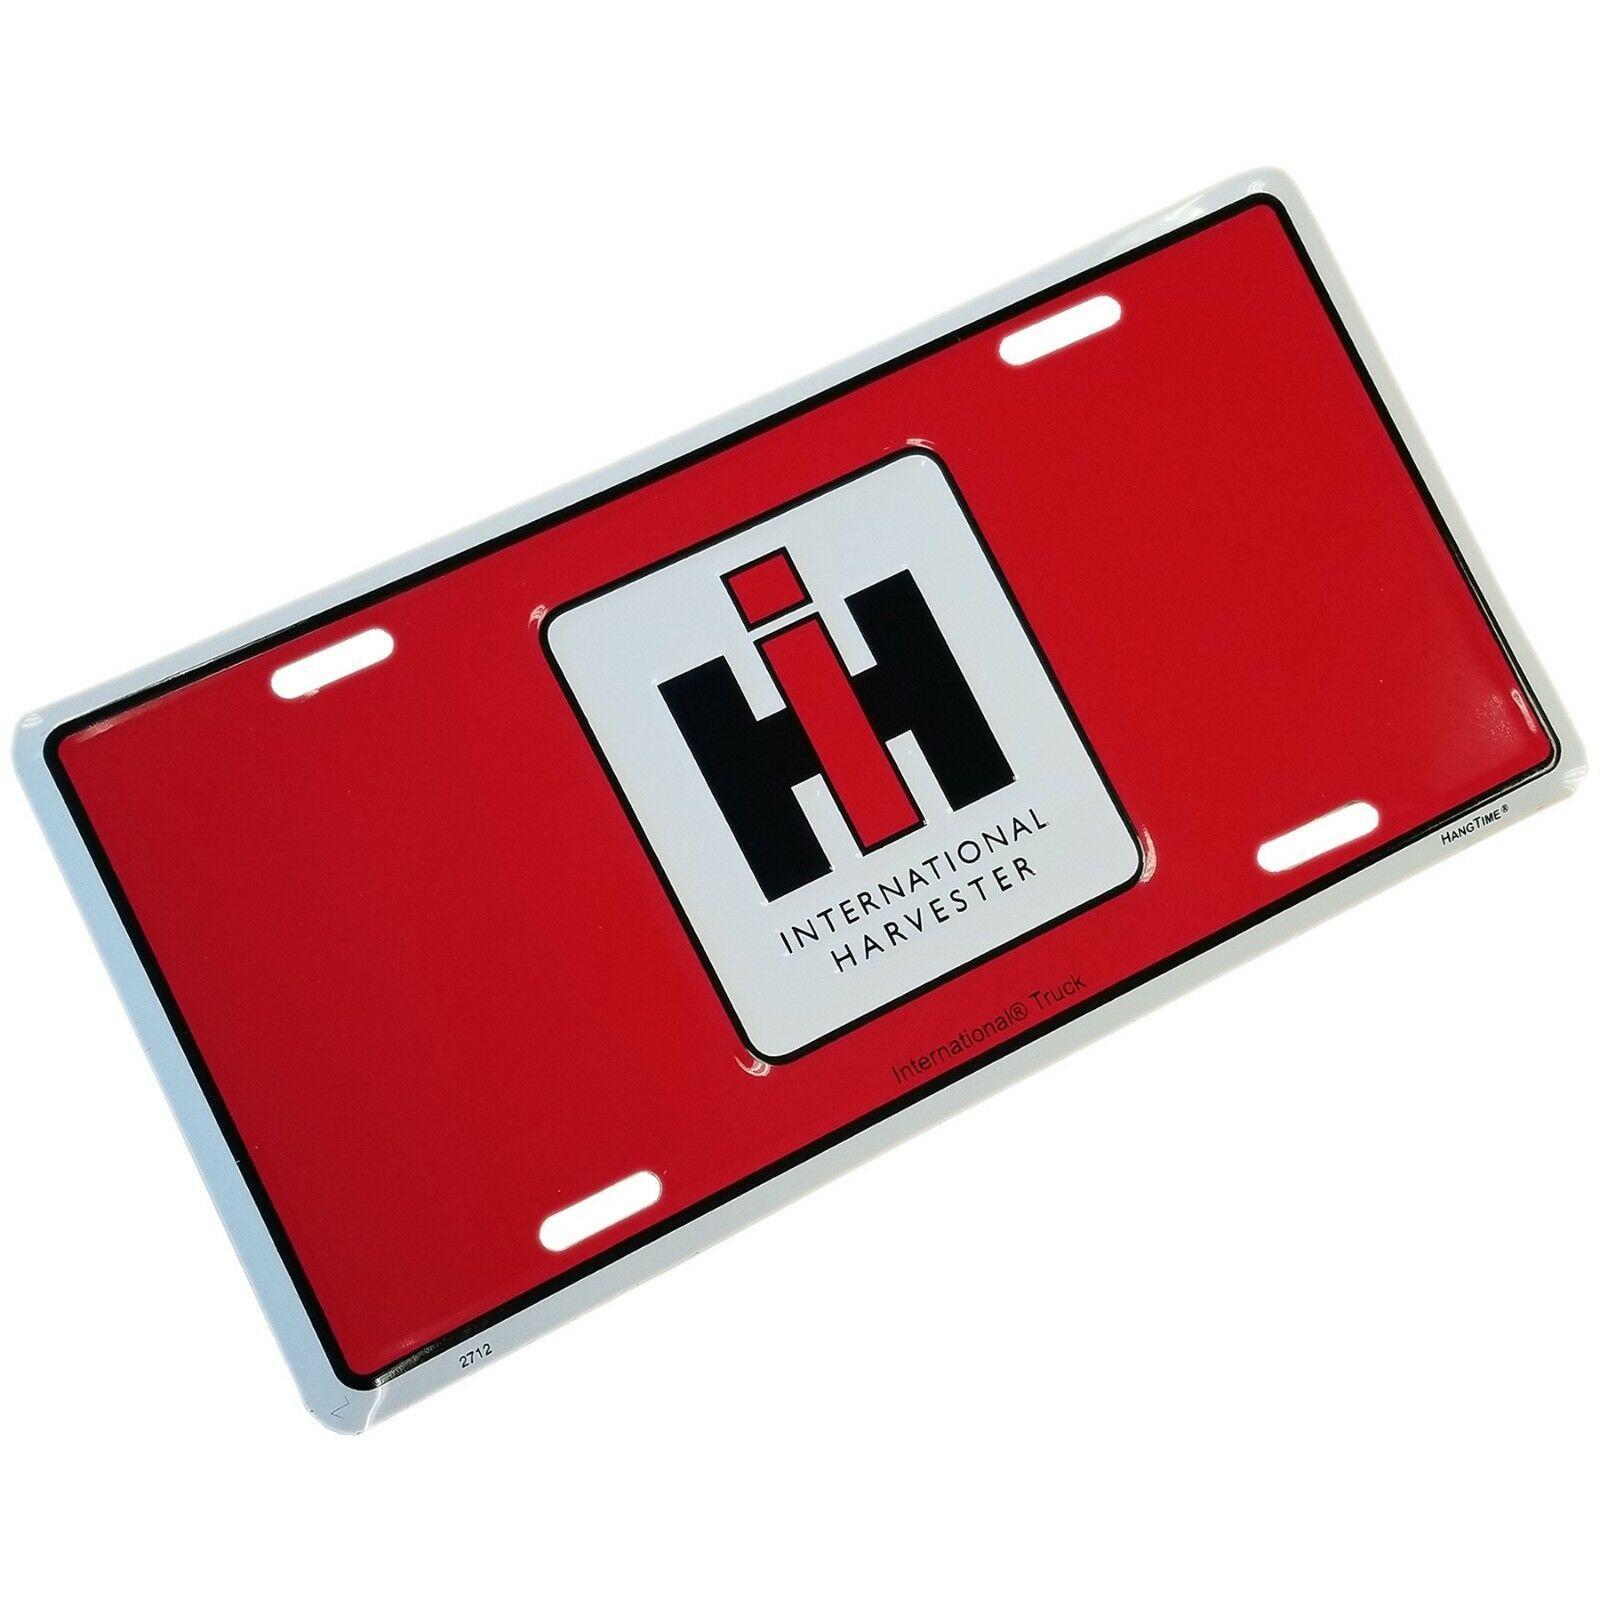 Harvester Logo - Details about iH International Trucking Harvester Logo Metal Red License  Plate Car Truck Tag